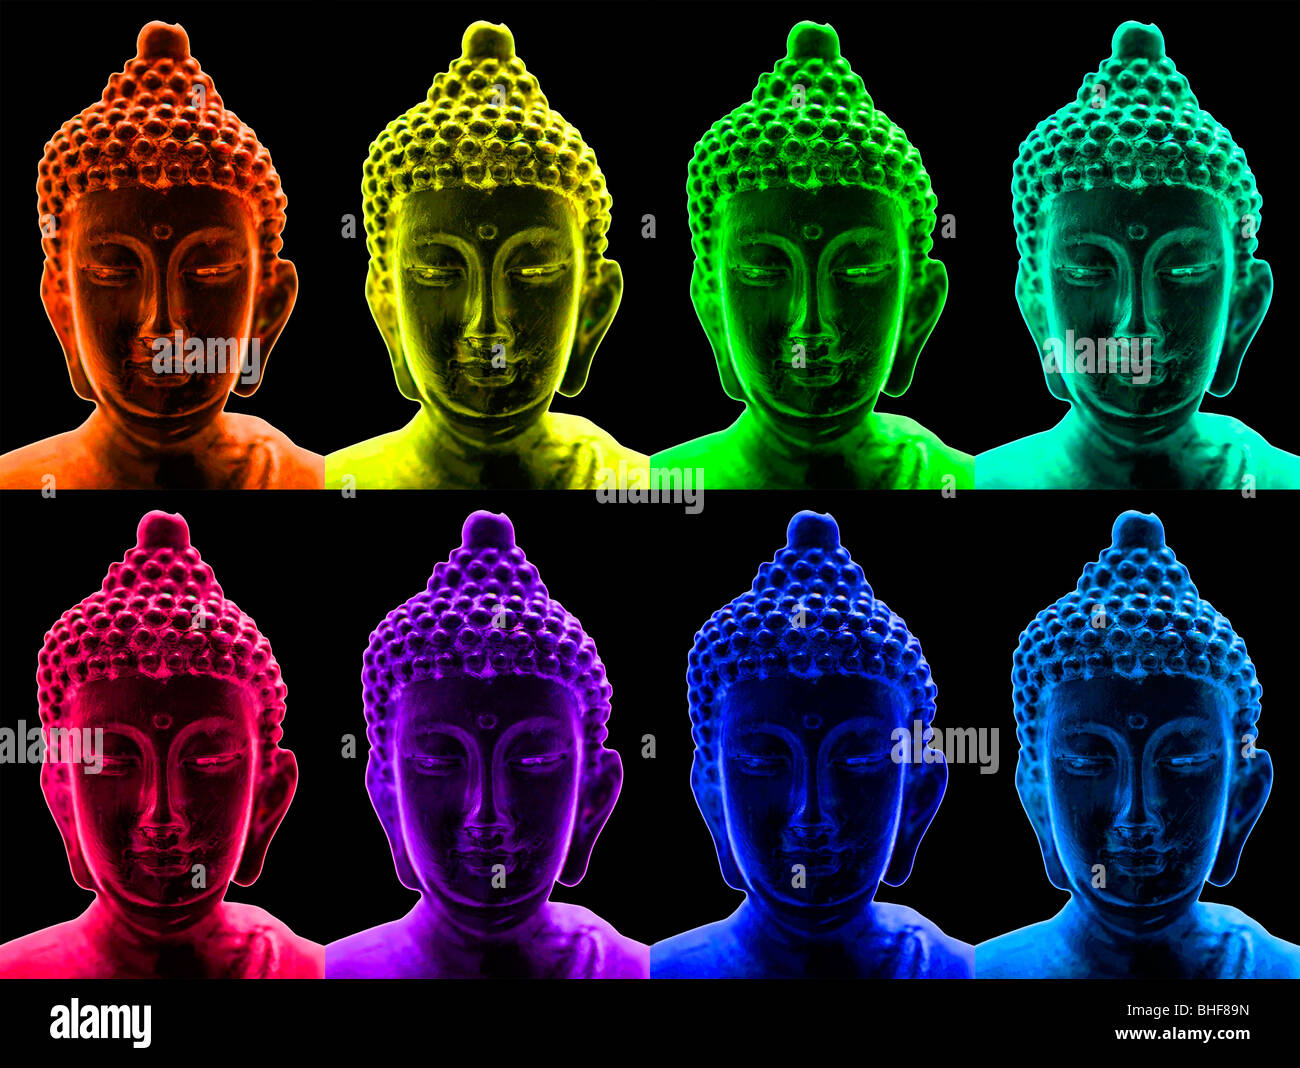 Ritratti di Buddha in un pop art style Foto Stock